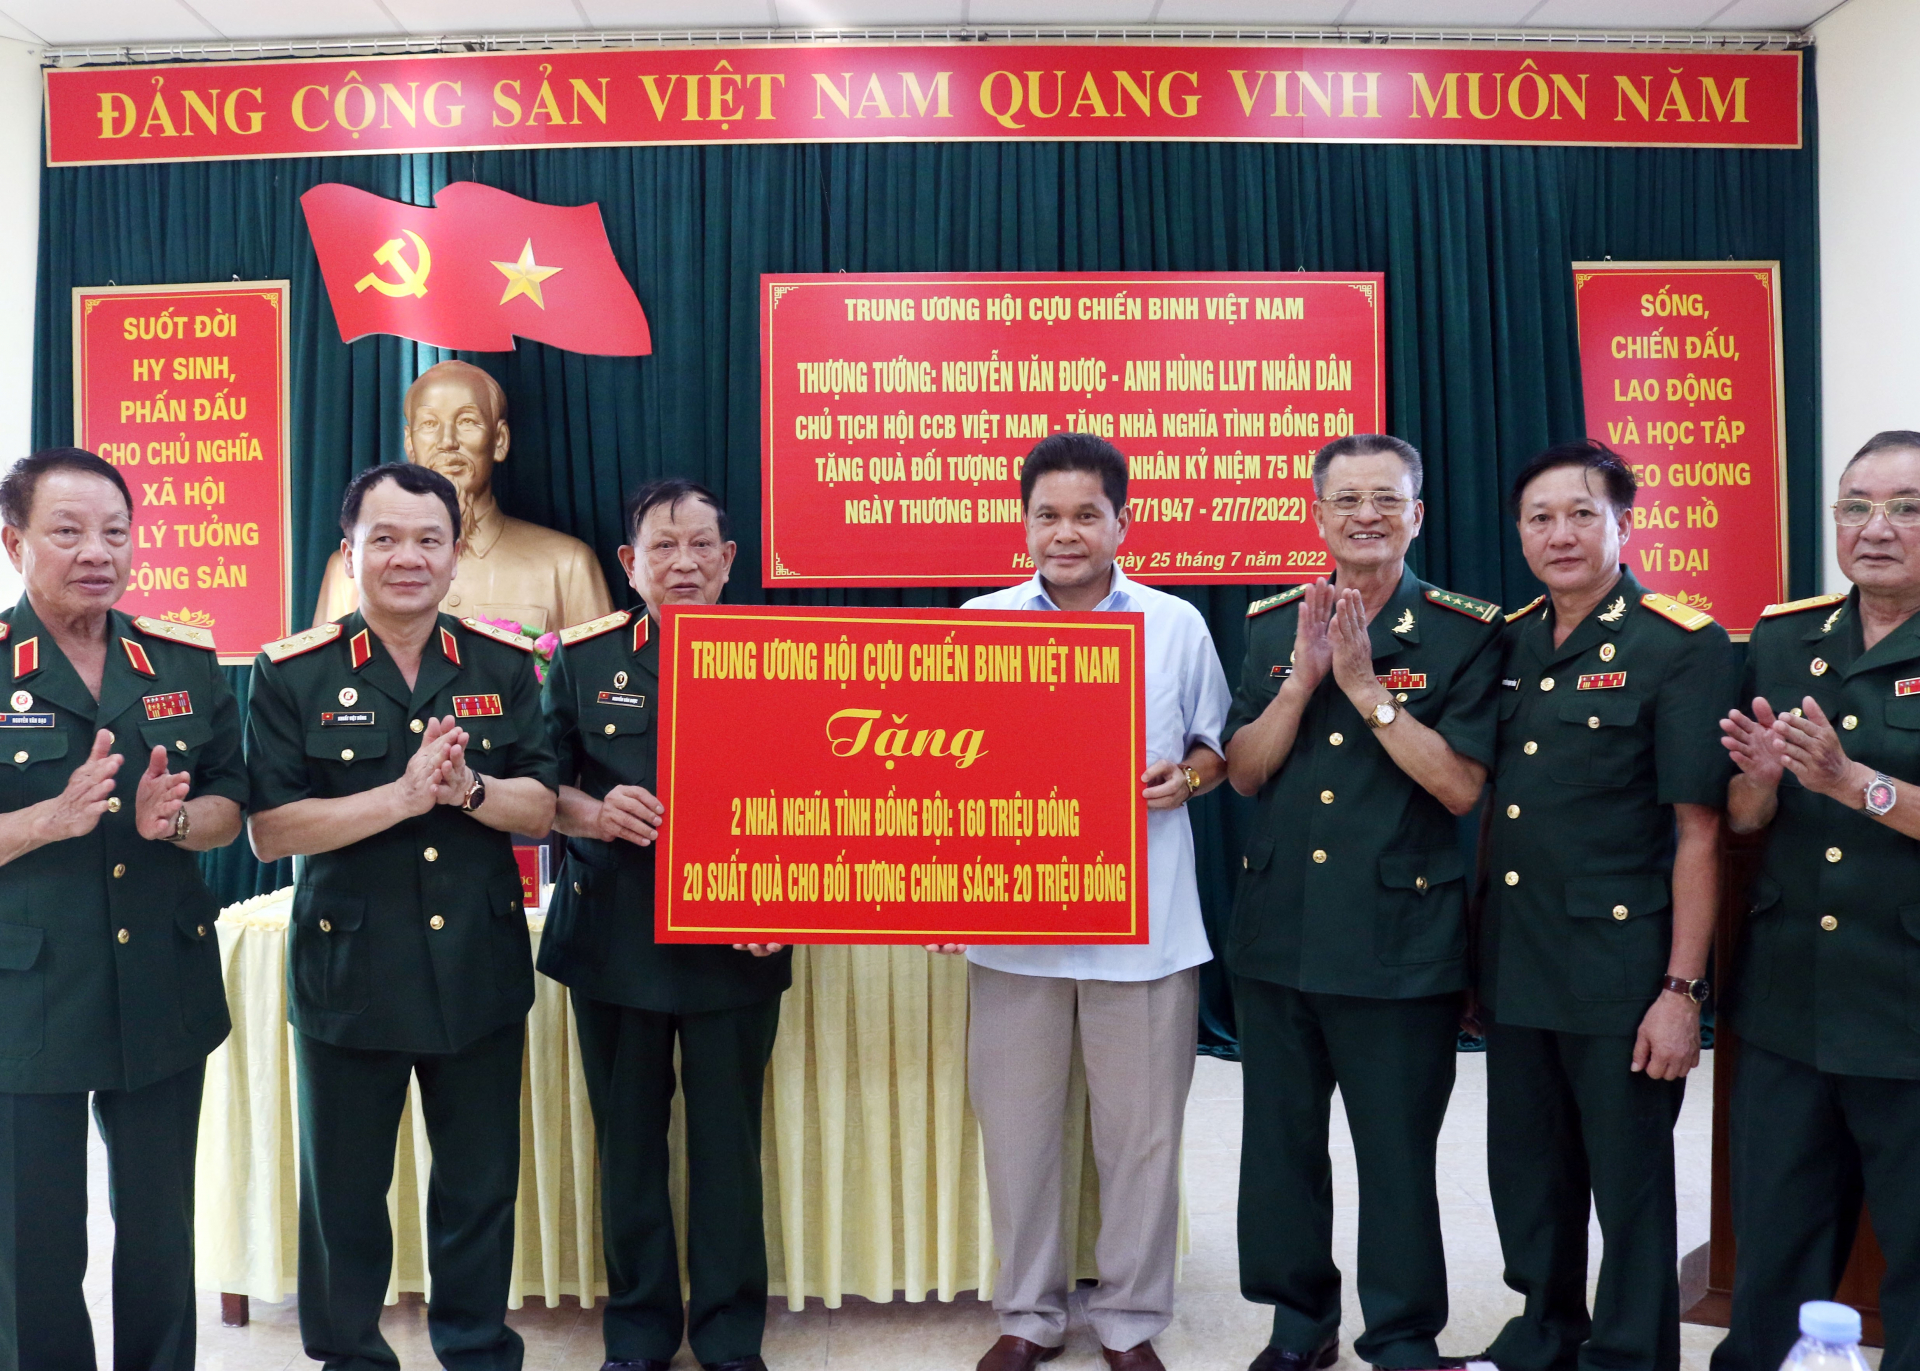 Thượng tướng Nguyễn Văn Được, Anh hùng Lực lượng Vũ trang Nhân dân, Chủ tịch T.Ư Hội CCB Việt Nam cùng các thành viên trong đoàn trao tặng 2 nhà tình nghĩa cho tỉnh